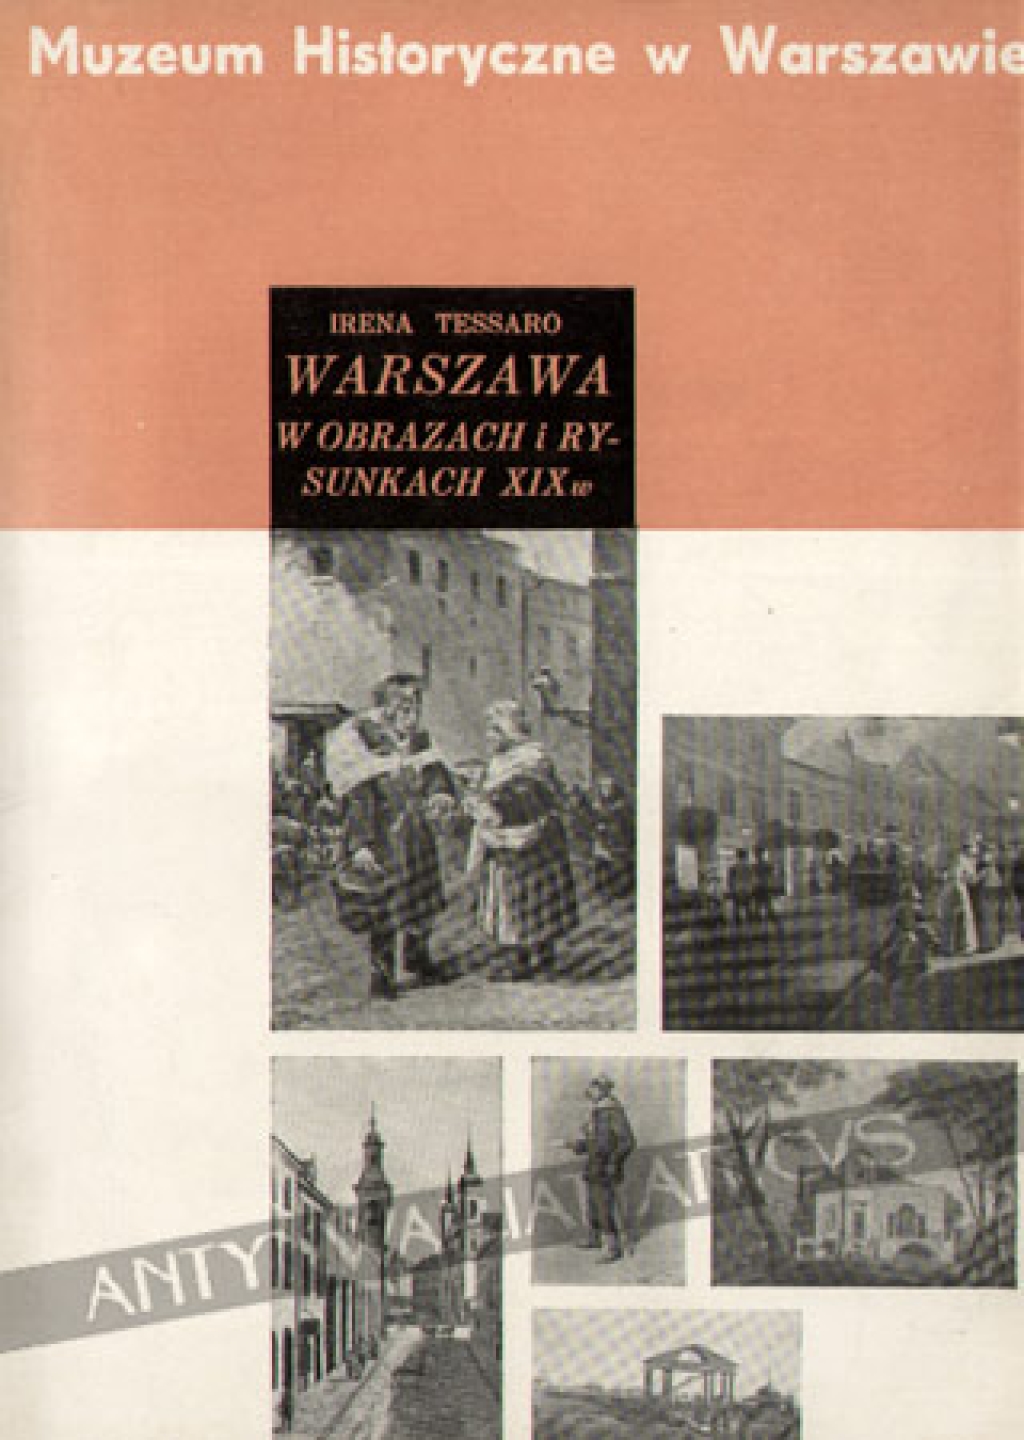 Warszawa w obrazach i rysunkach XIX wieku. Katalog zbiorów Muzeum Historycznego w Warszawie